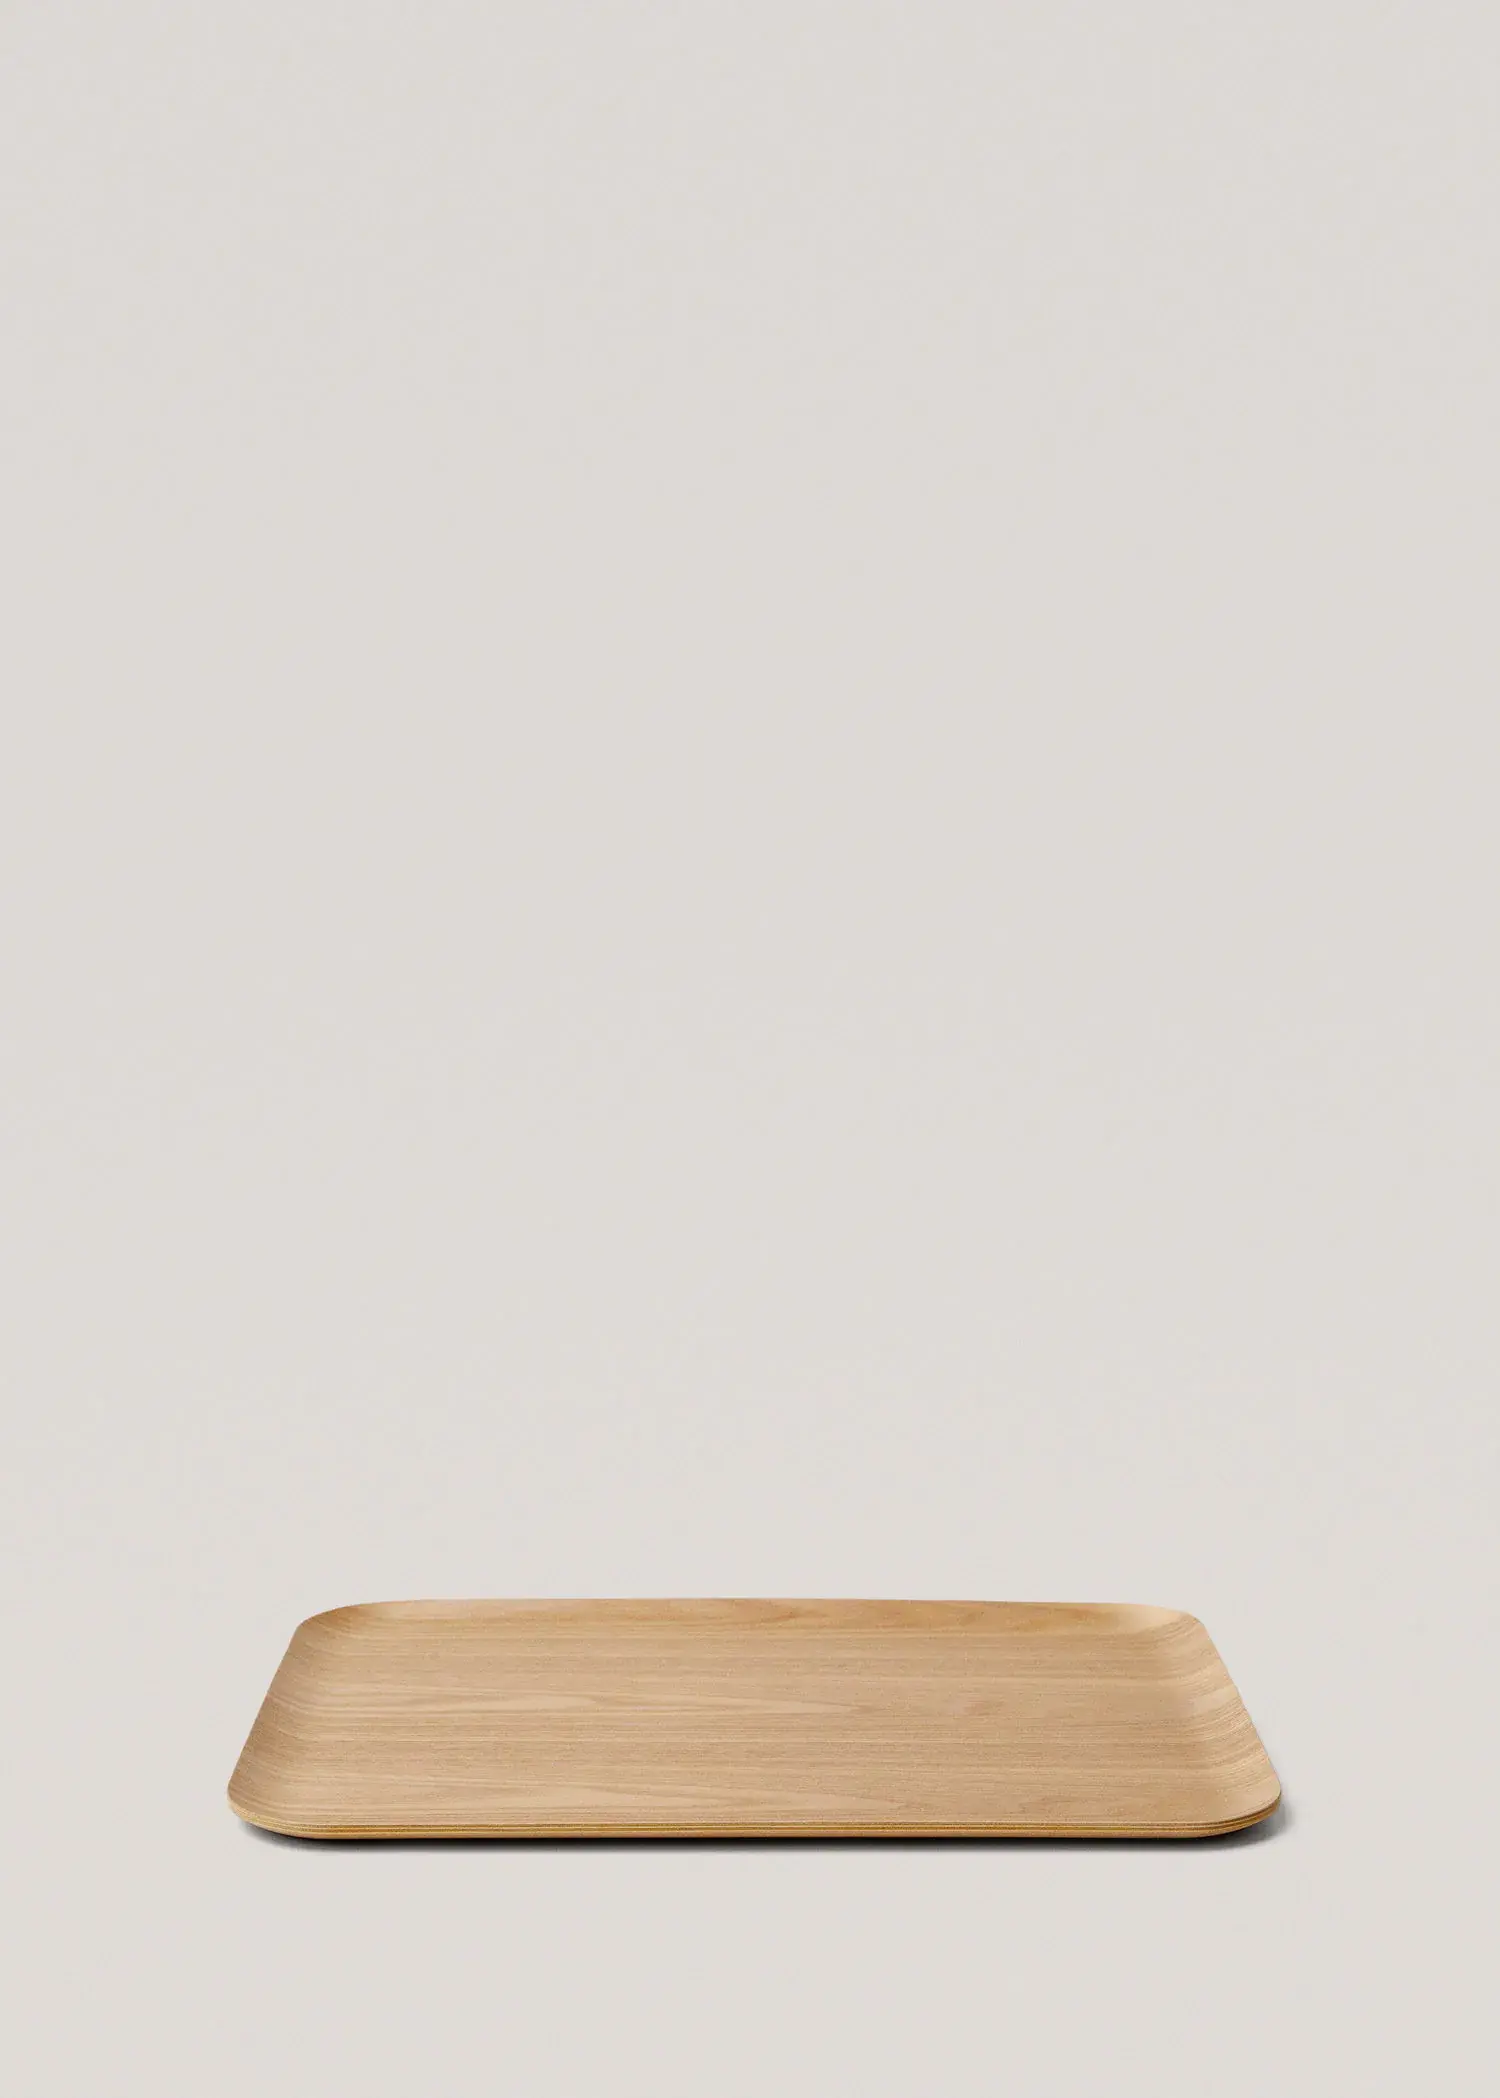 Mango Bandeja de madera rectangular 46x35cm. 1